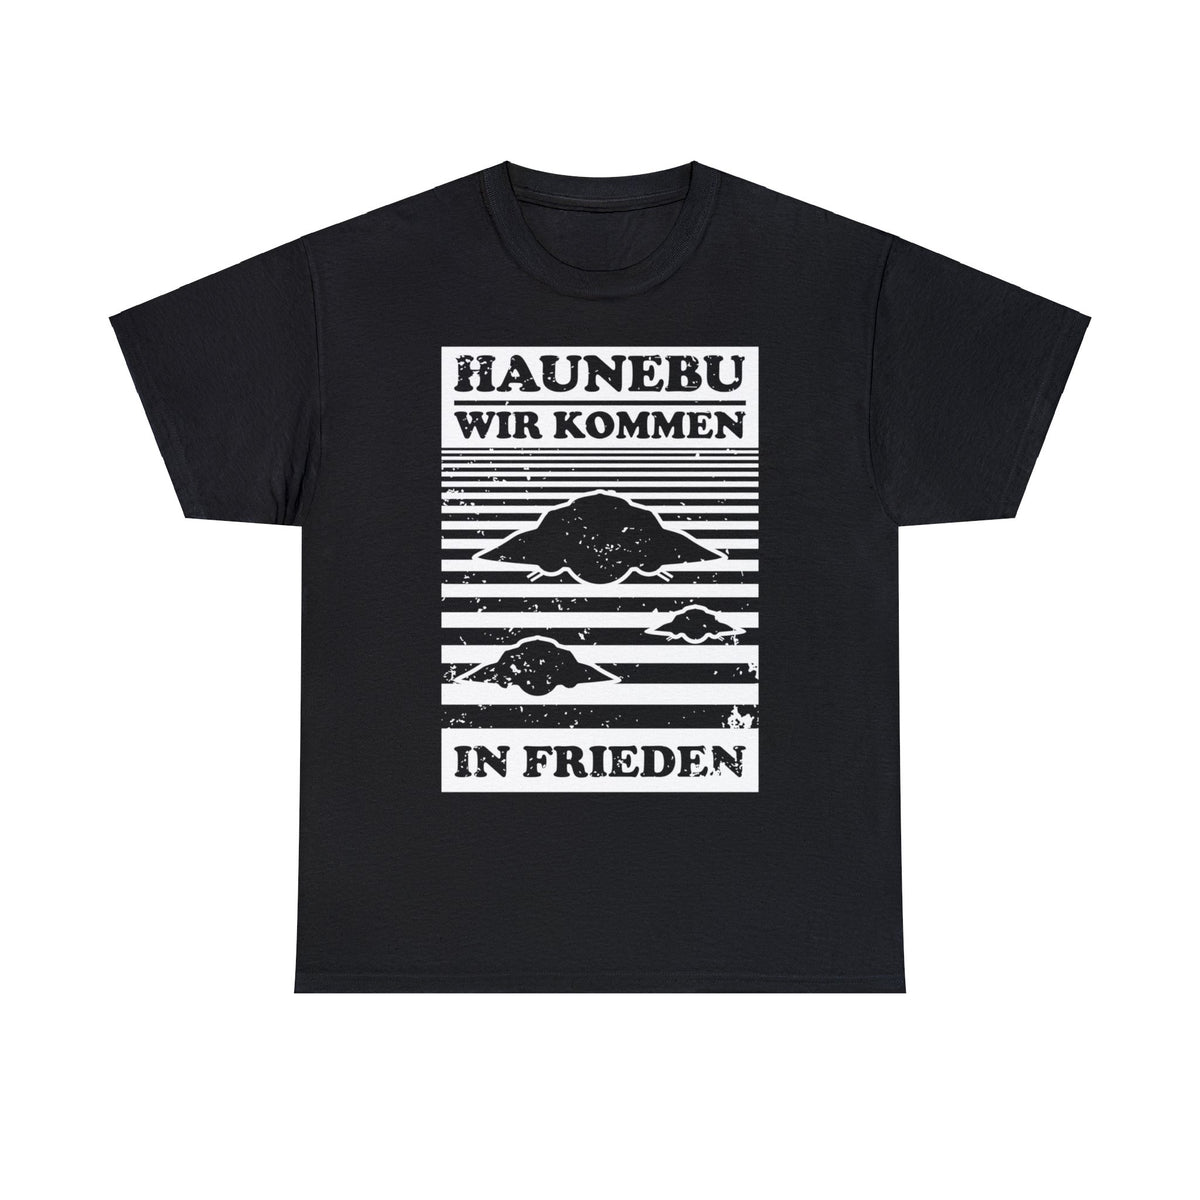 Haunebu - Frieden - T-Shirt